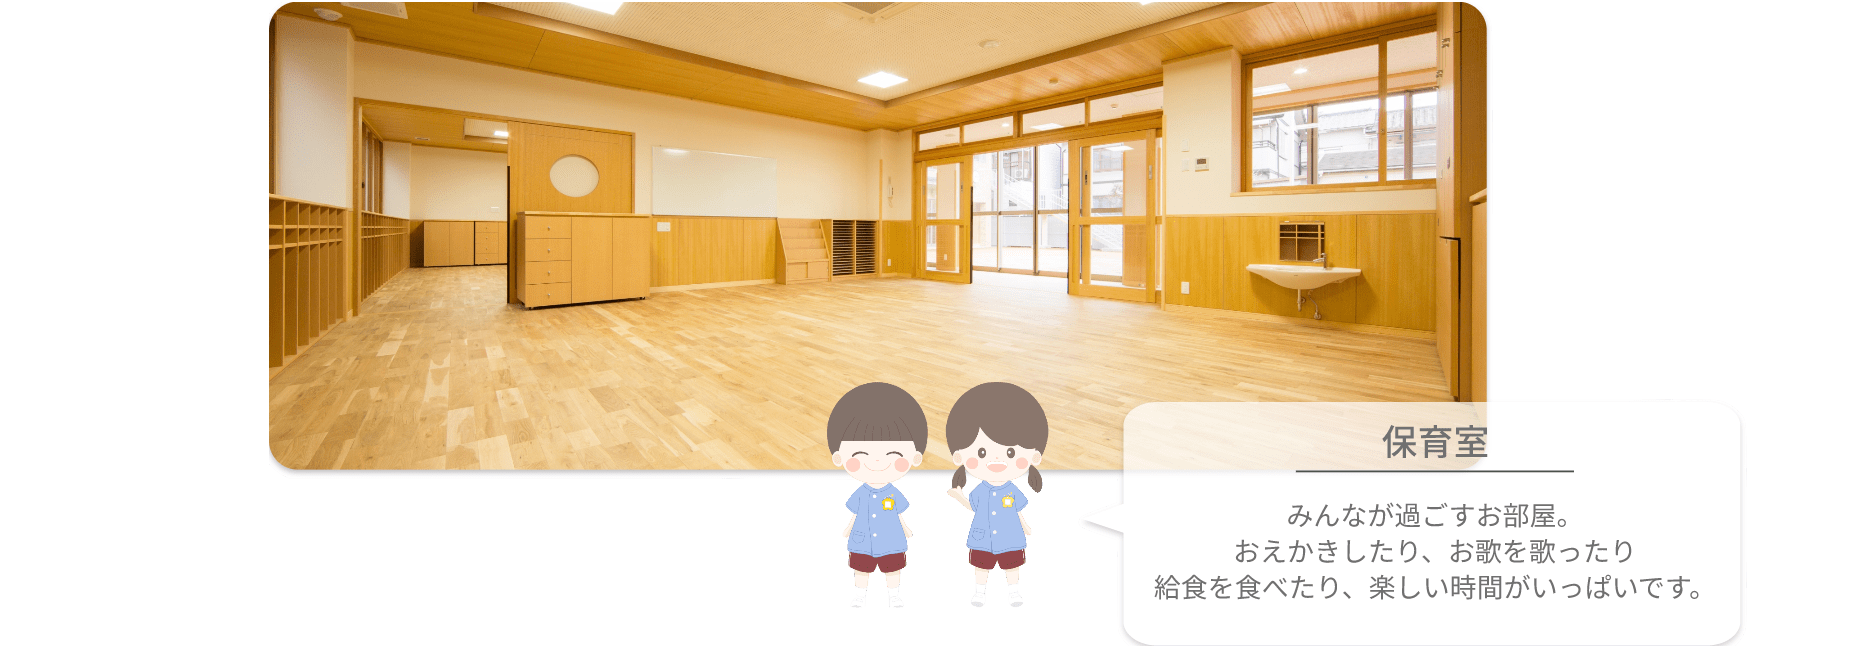 小倉幼稚園 保育室